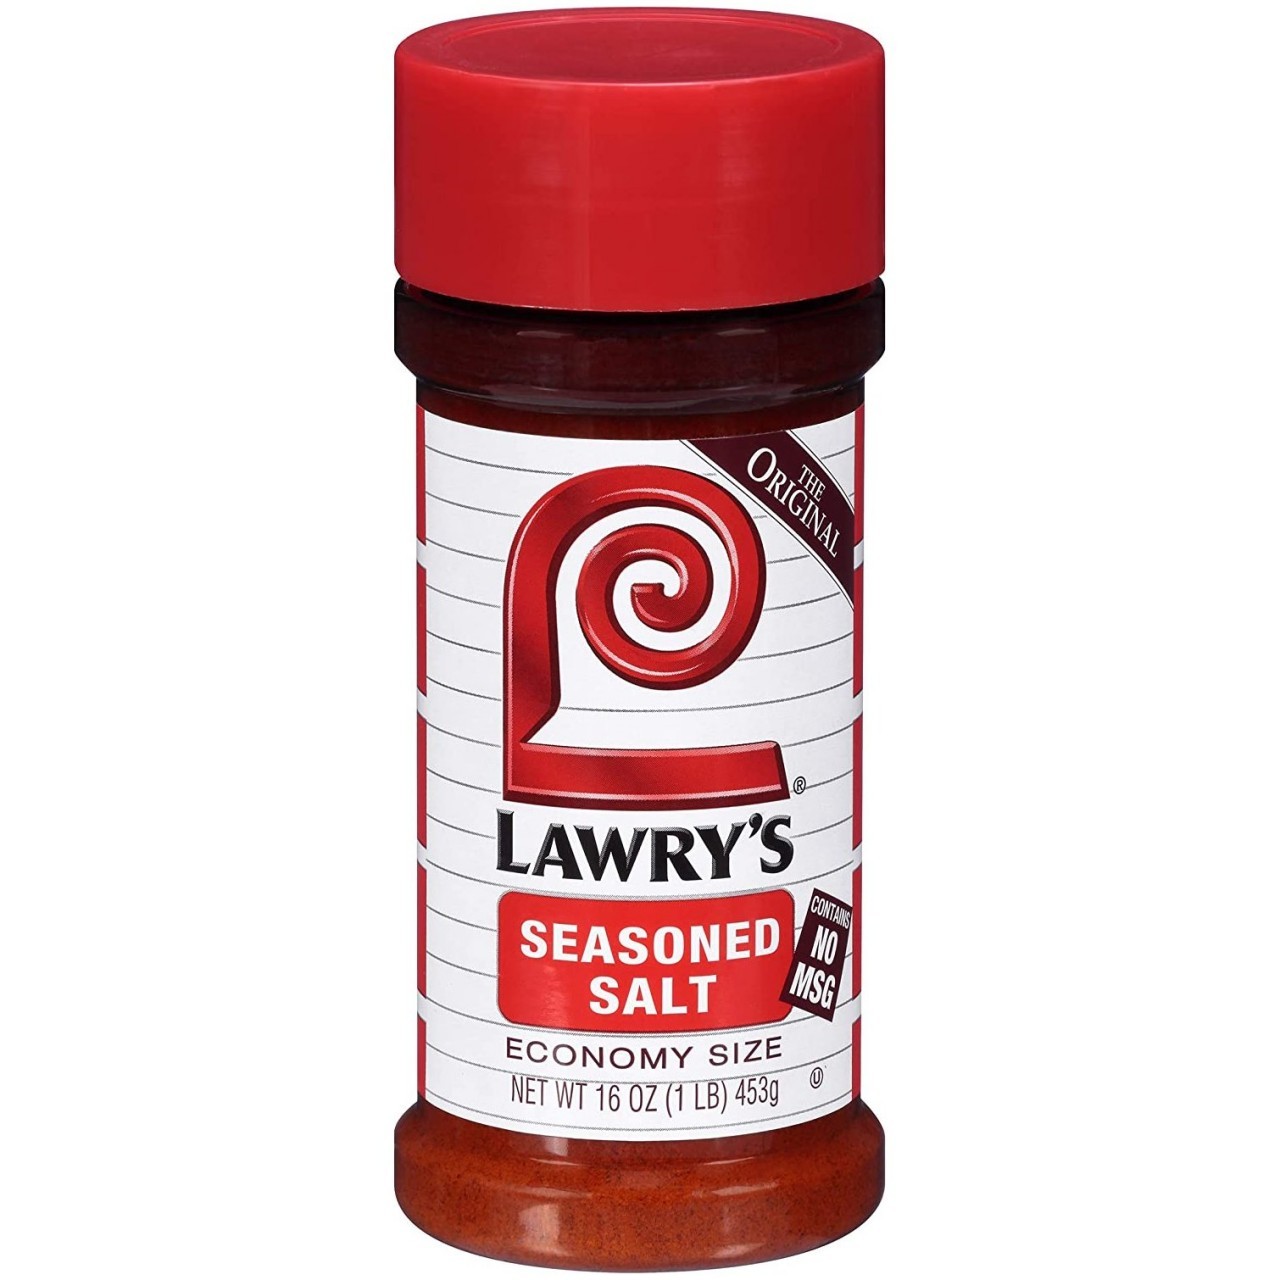 LAWRYS SEASONED SALT 16oz